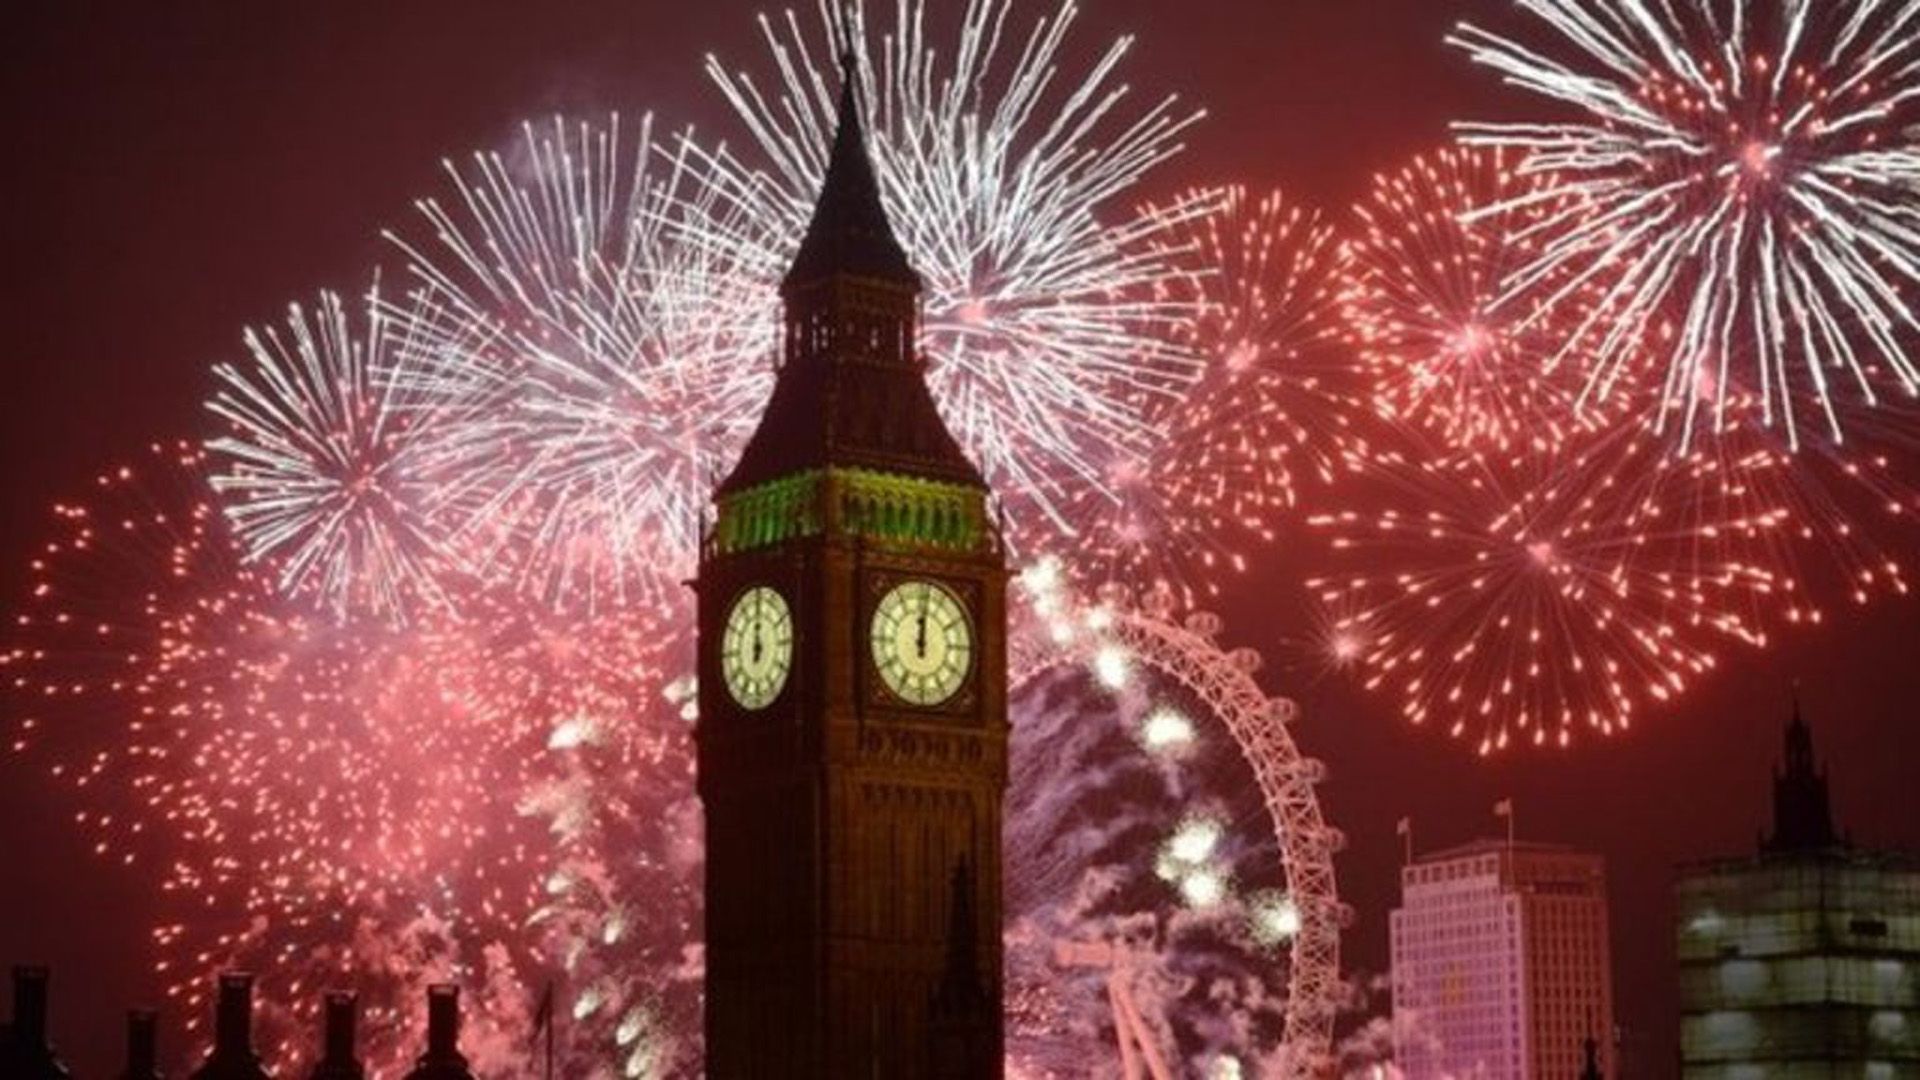 London New Year's Eve Fireworks Big Ben Uk Parliament Desktop Wallpaper HD Resolution 1920x1080, Wallpaper13.com